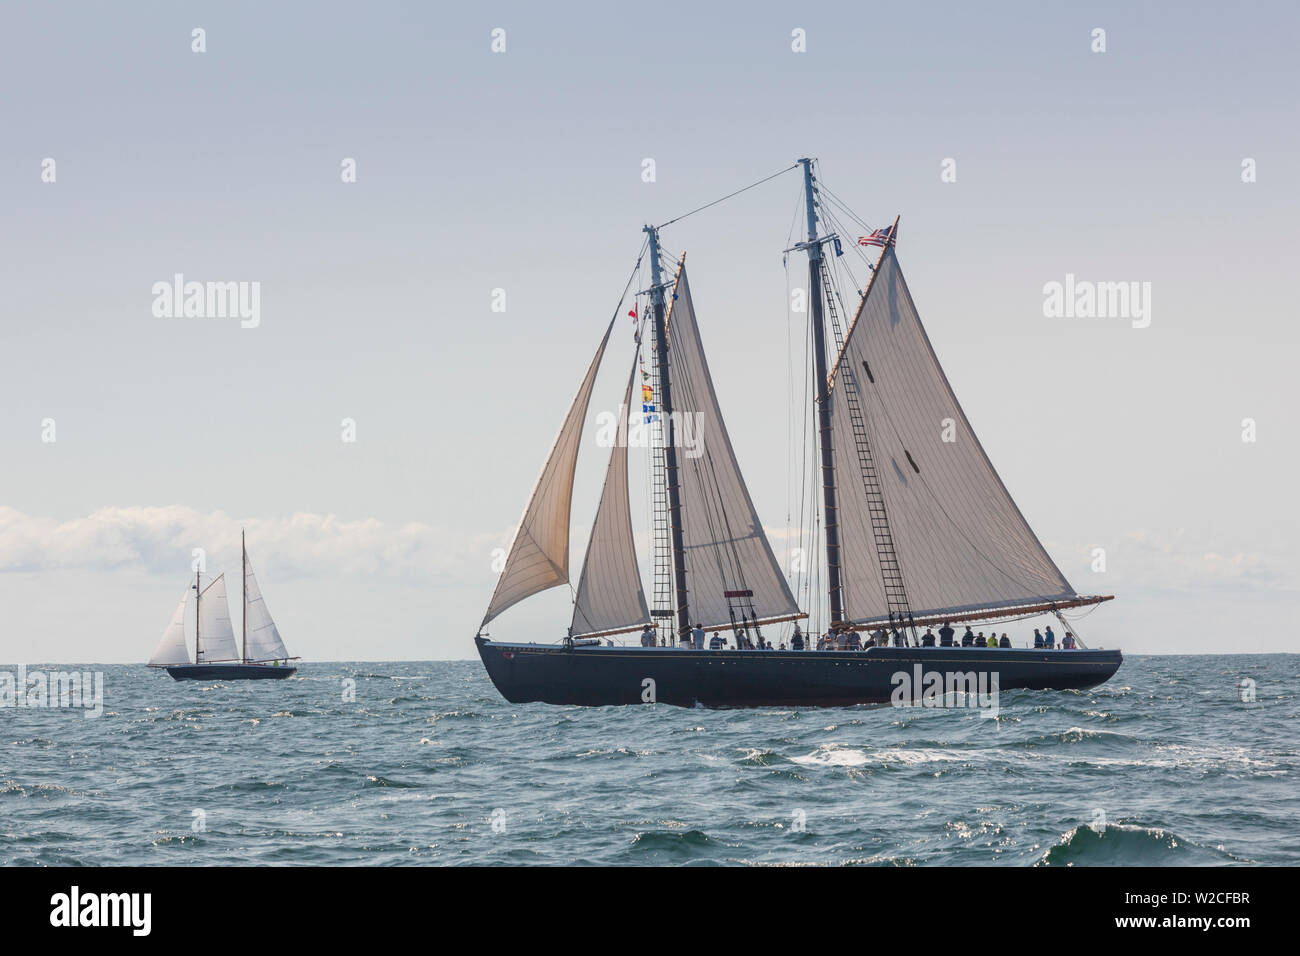 USA, Massachusetts, Cape Ann, Gloucester, America's Oldest Seaport, Gloucester Schooner Festival, schooner sailing ships Stock Photo